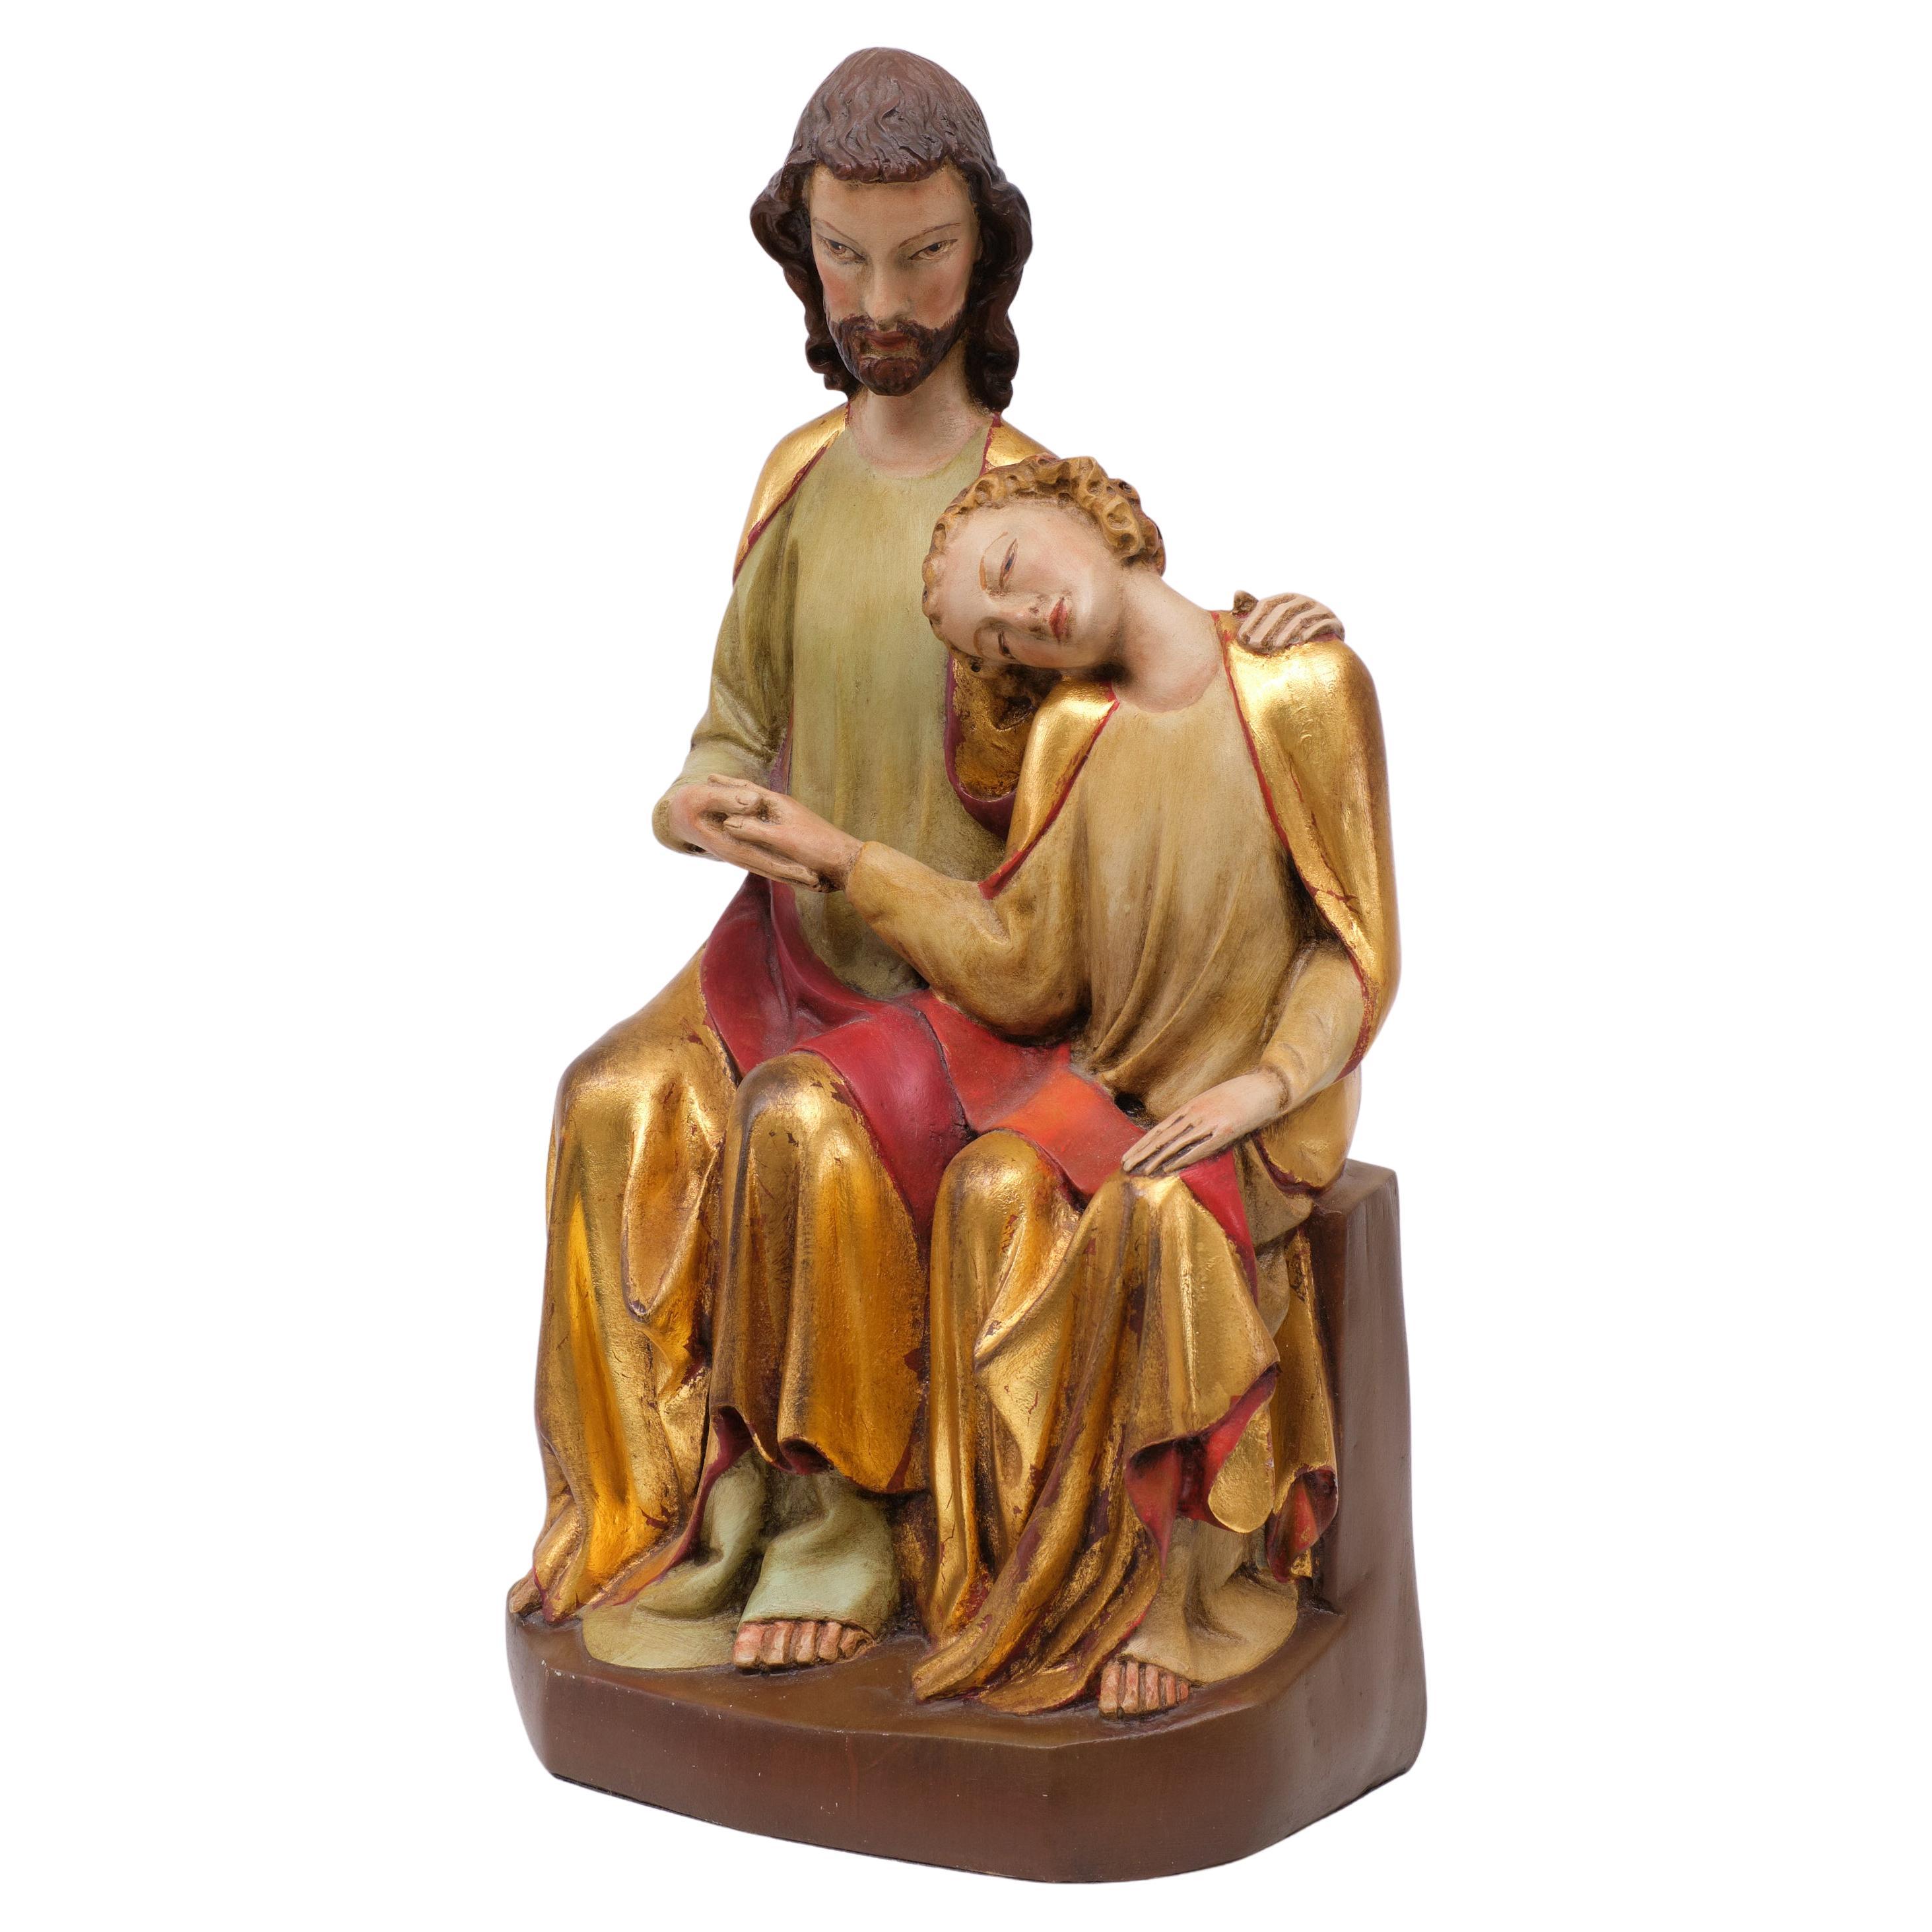 Dieser Artikel ist eine identische Museumsreproduktion  Die Schnitzerei zeigt Christus und den heiligen Johannes auf einer Bank sitzend. Johannes legt seinen Kopf auf die Brust Christi, seine Augen sind andächtig geschlossen. Seine rechte Hand ruht